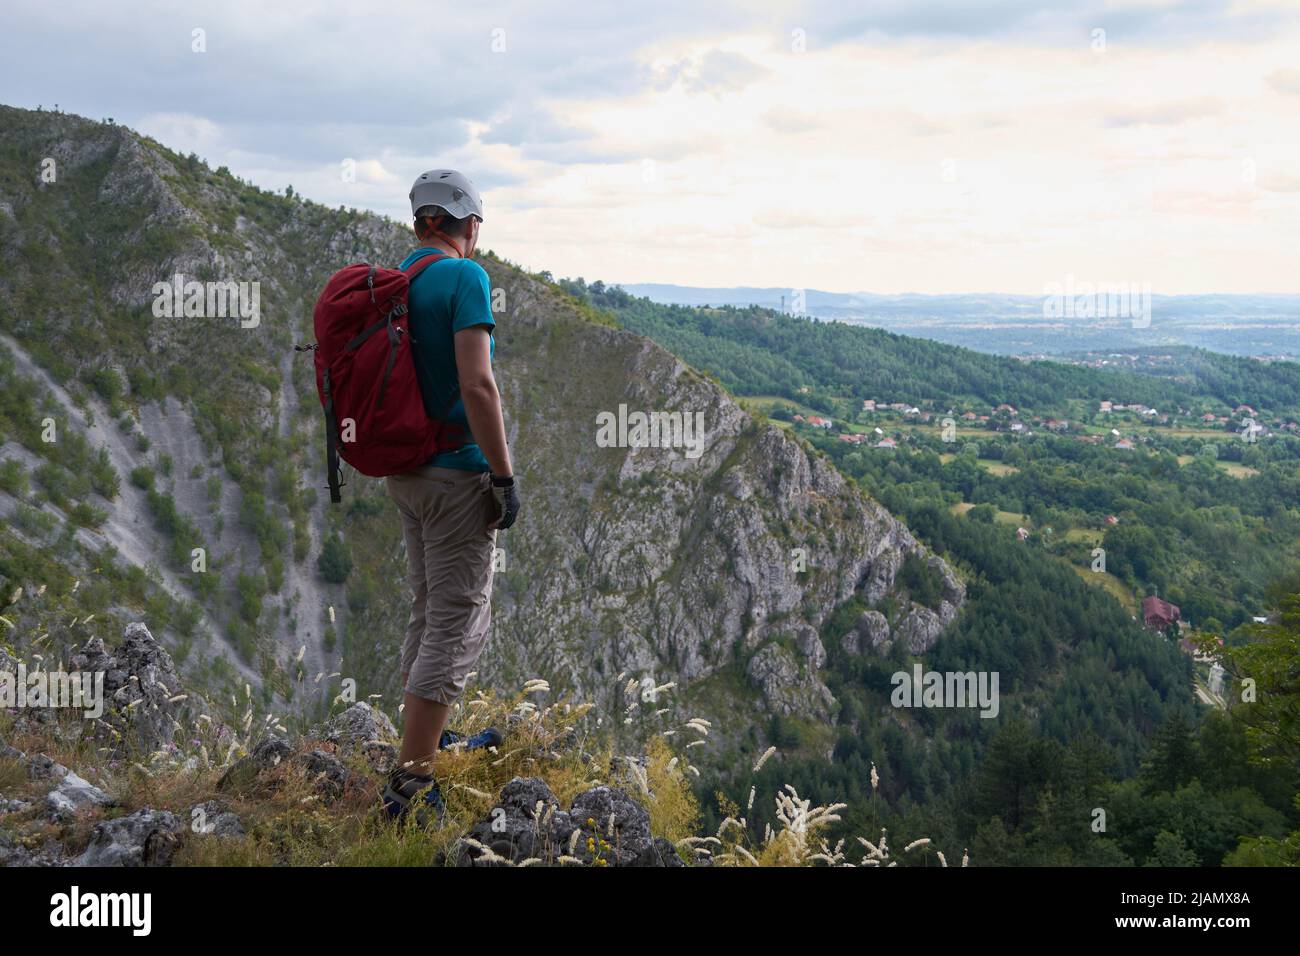 Homme avec un casque d'escalade alpin, un sac à dos rouge et un pantalon sport trois quarts, au bord d'une falaise de montagne, regarde au loin. Alpinisme co Banque D'Images